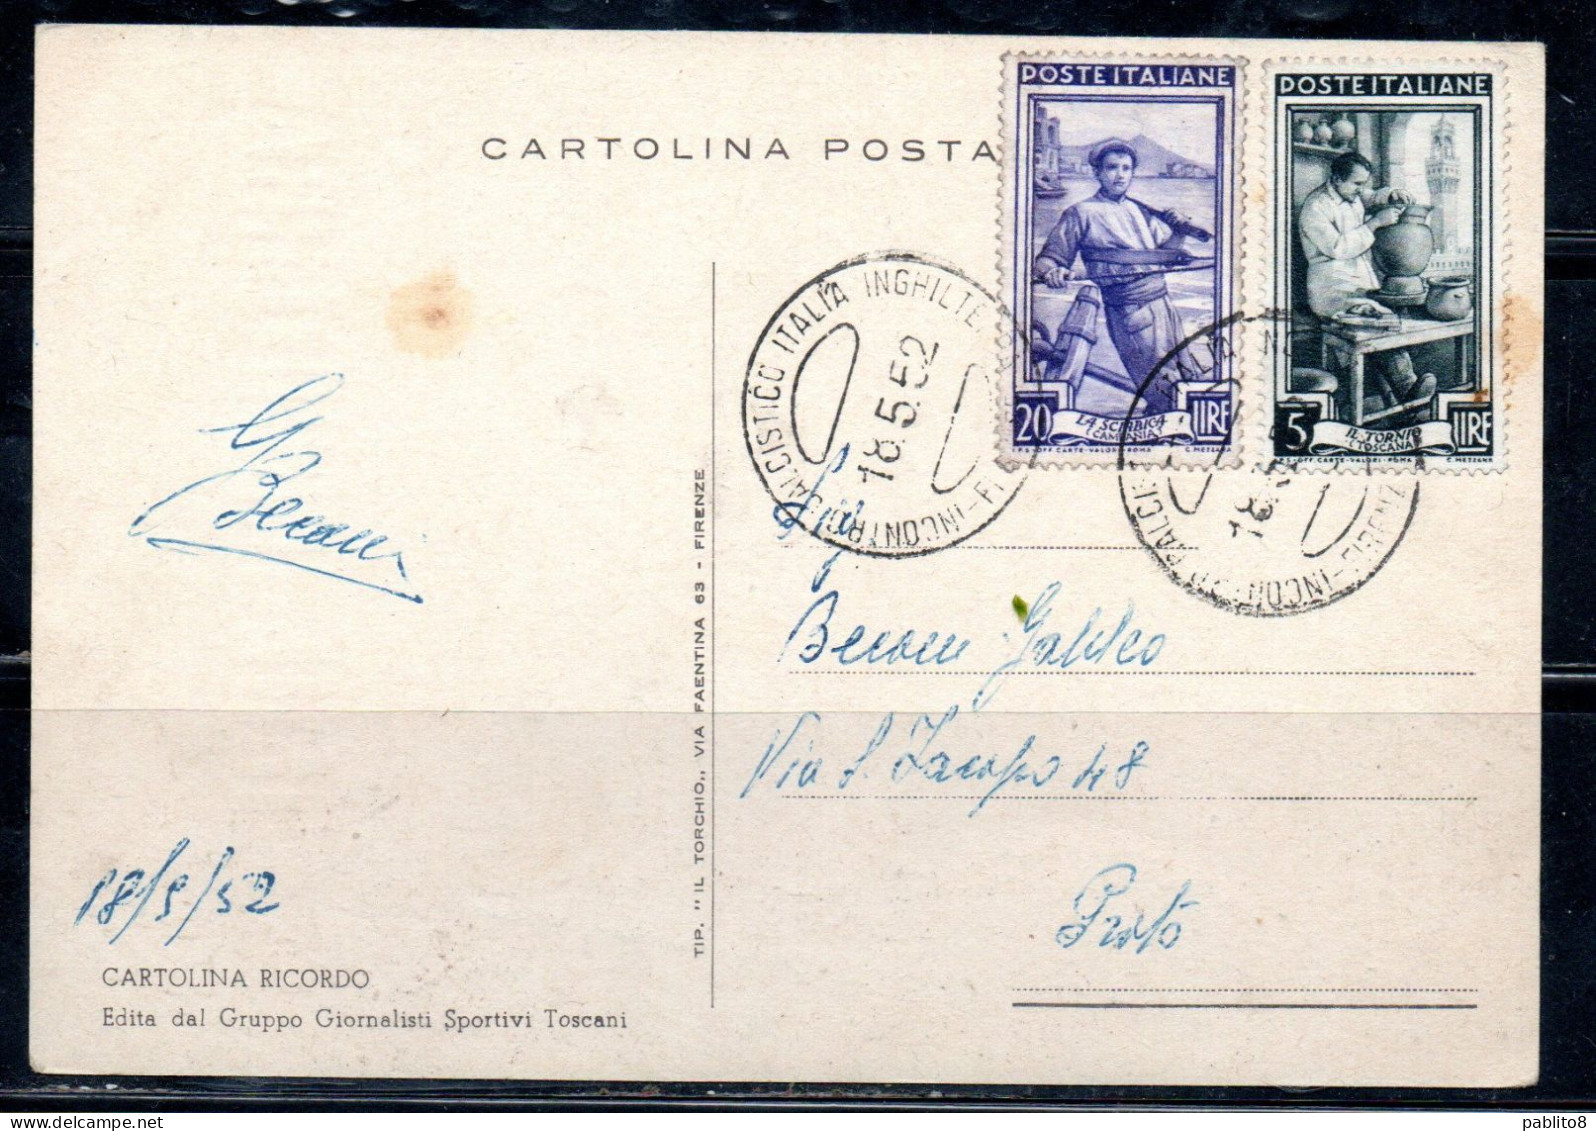 ITALIA REPUBBLICA ITALY REPUBLIC 18 05 1952 IN RICORDO DI ITALIA-INGHILTERRA CALCIO MAXI MAXIMUM CARD CARTOLINA CARTE - Maximum Cards